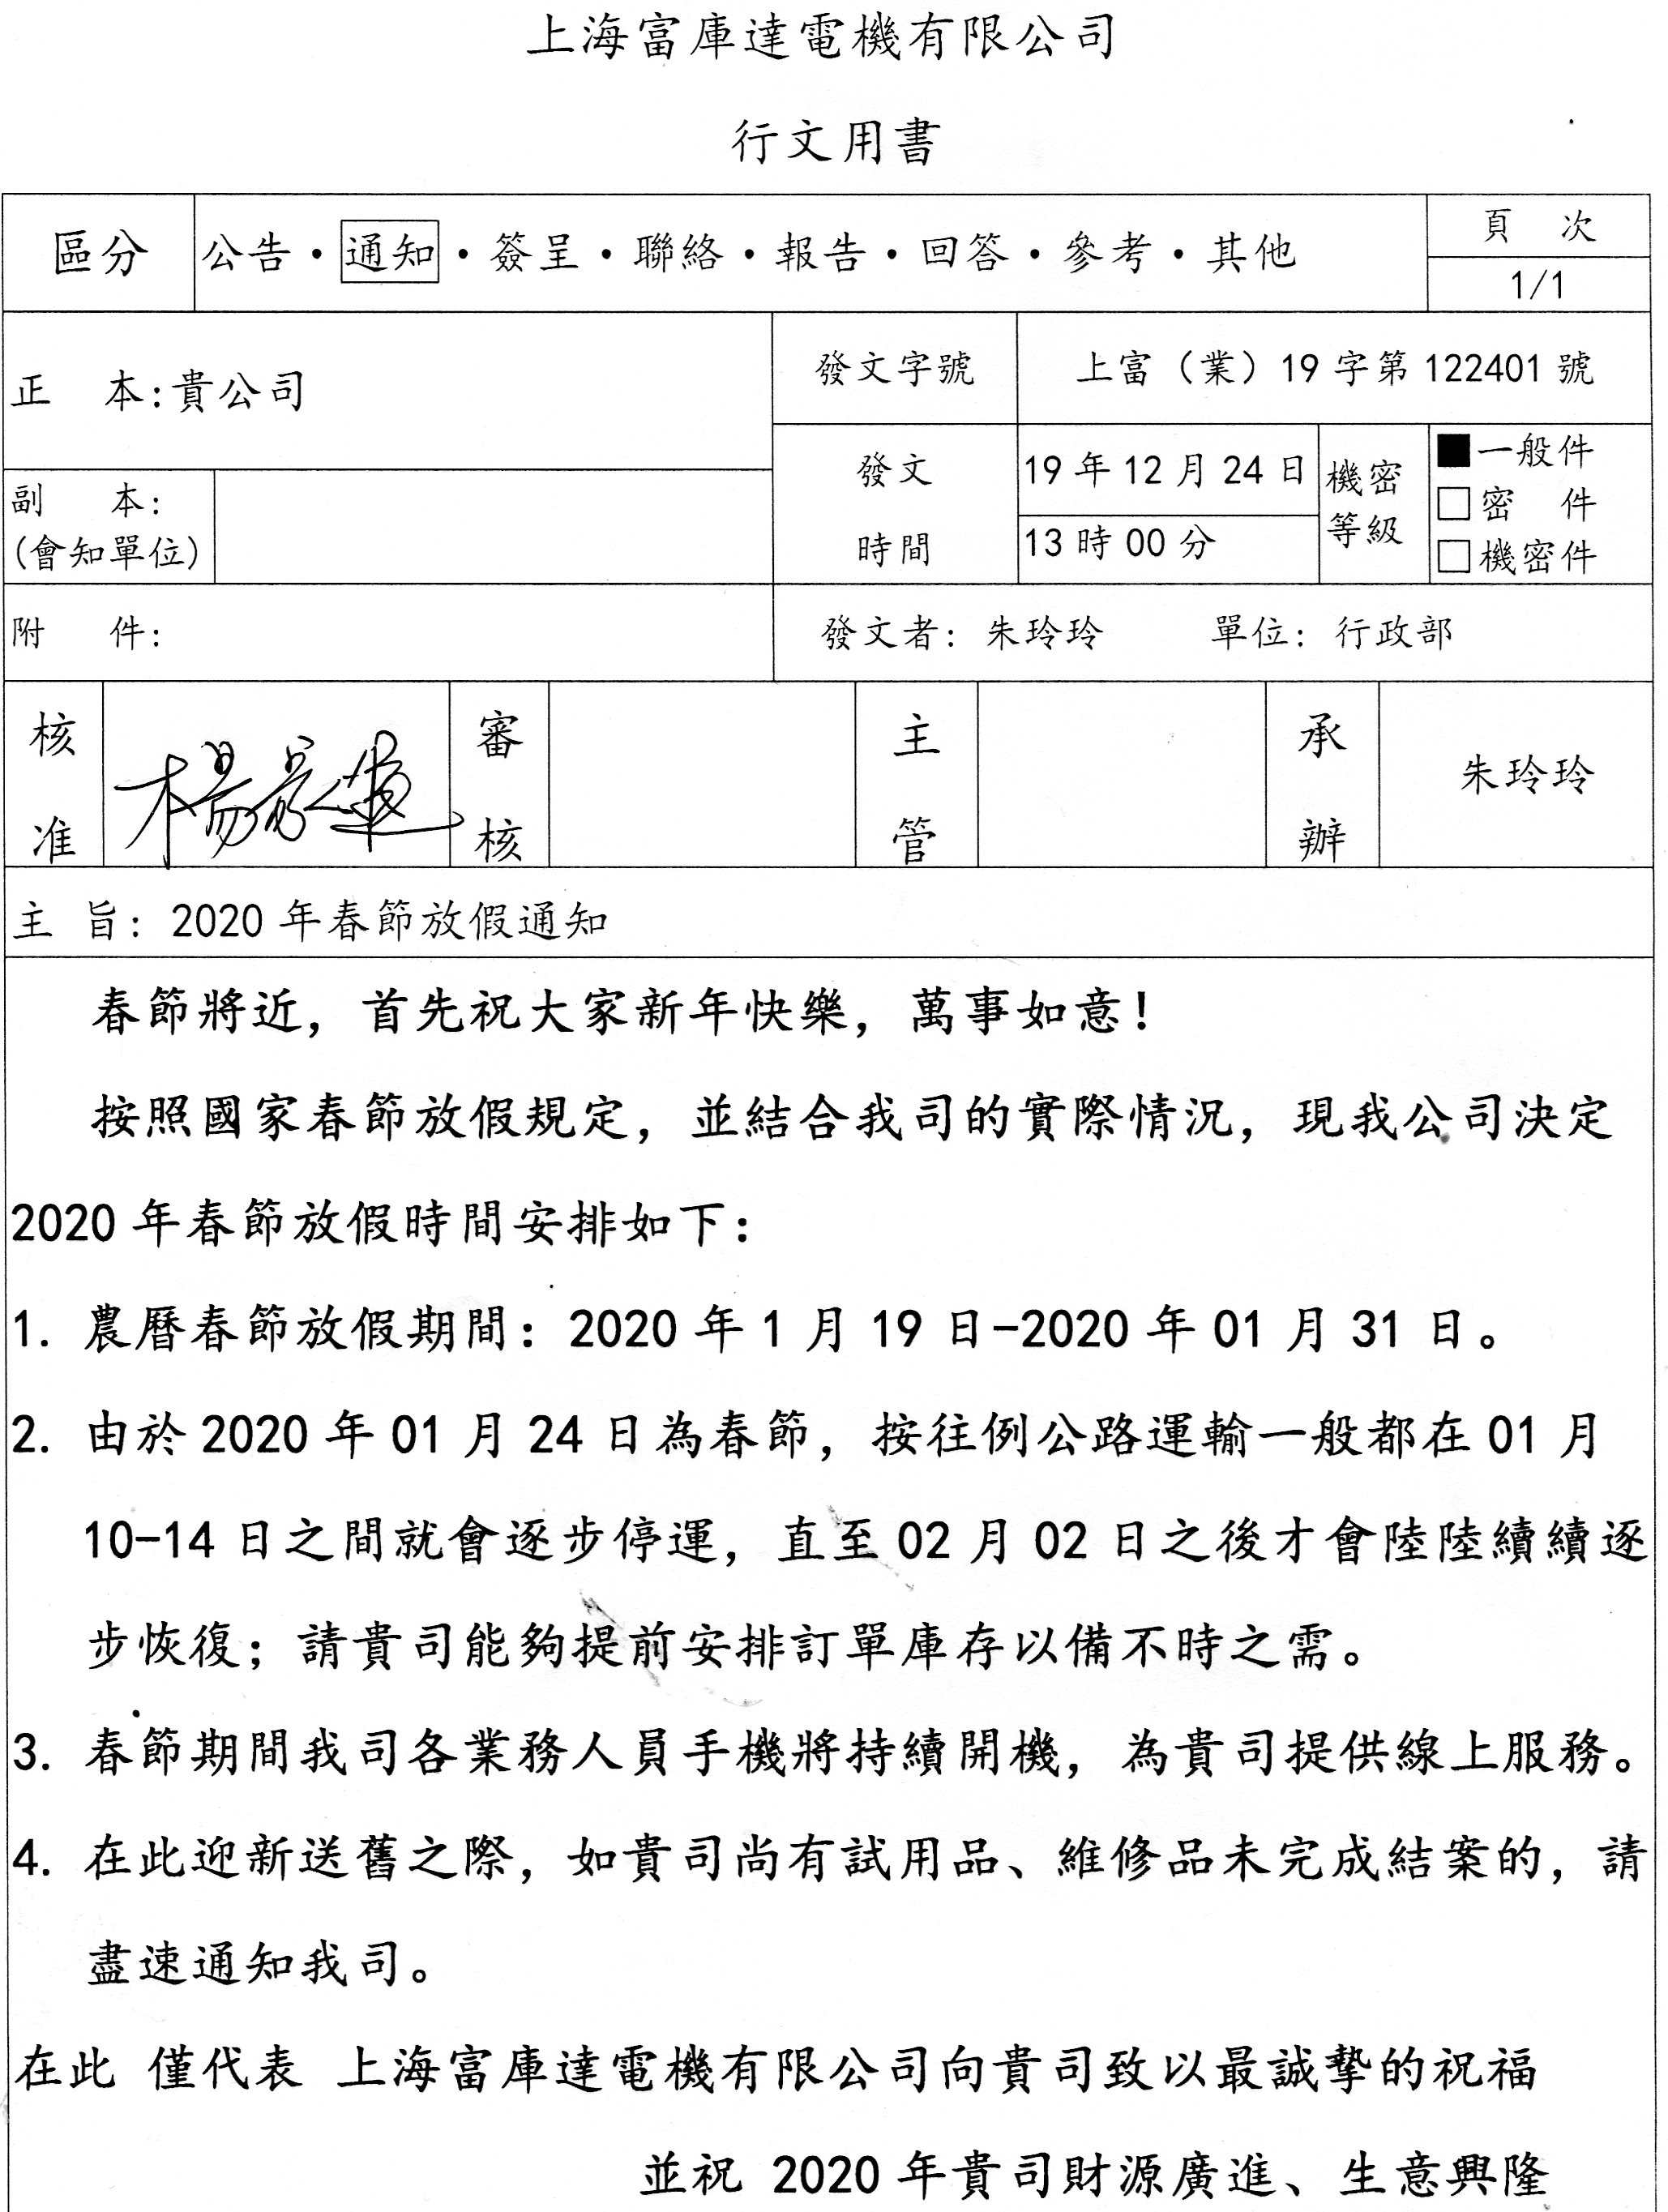 上海富库达电机有限公司2020年春节放假通知